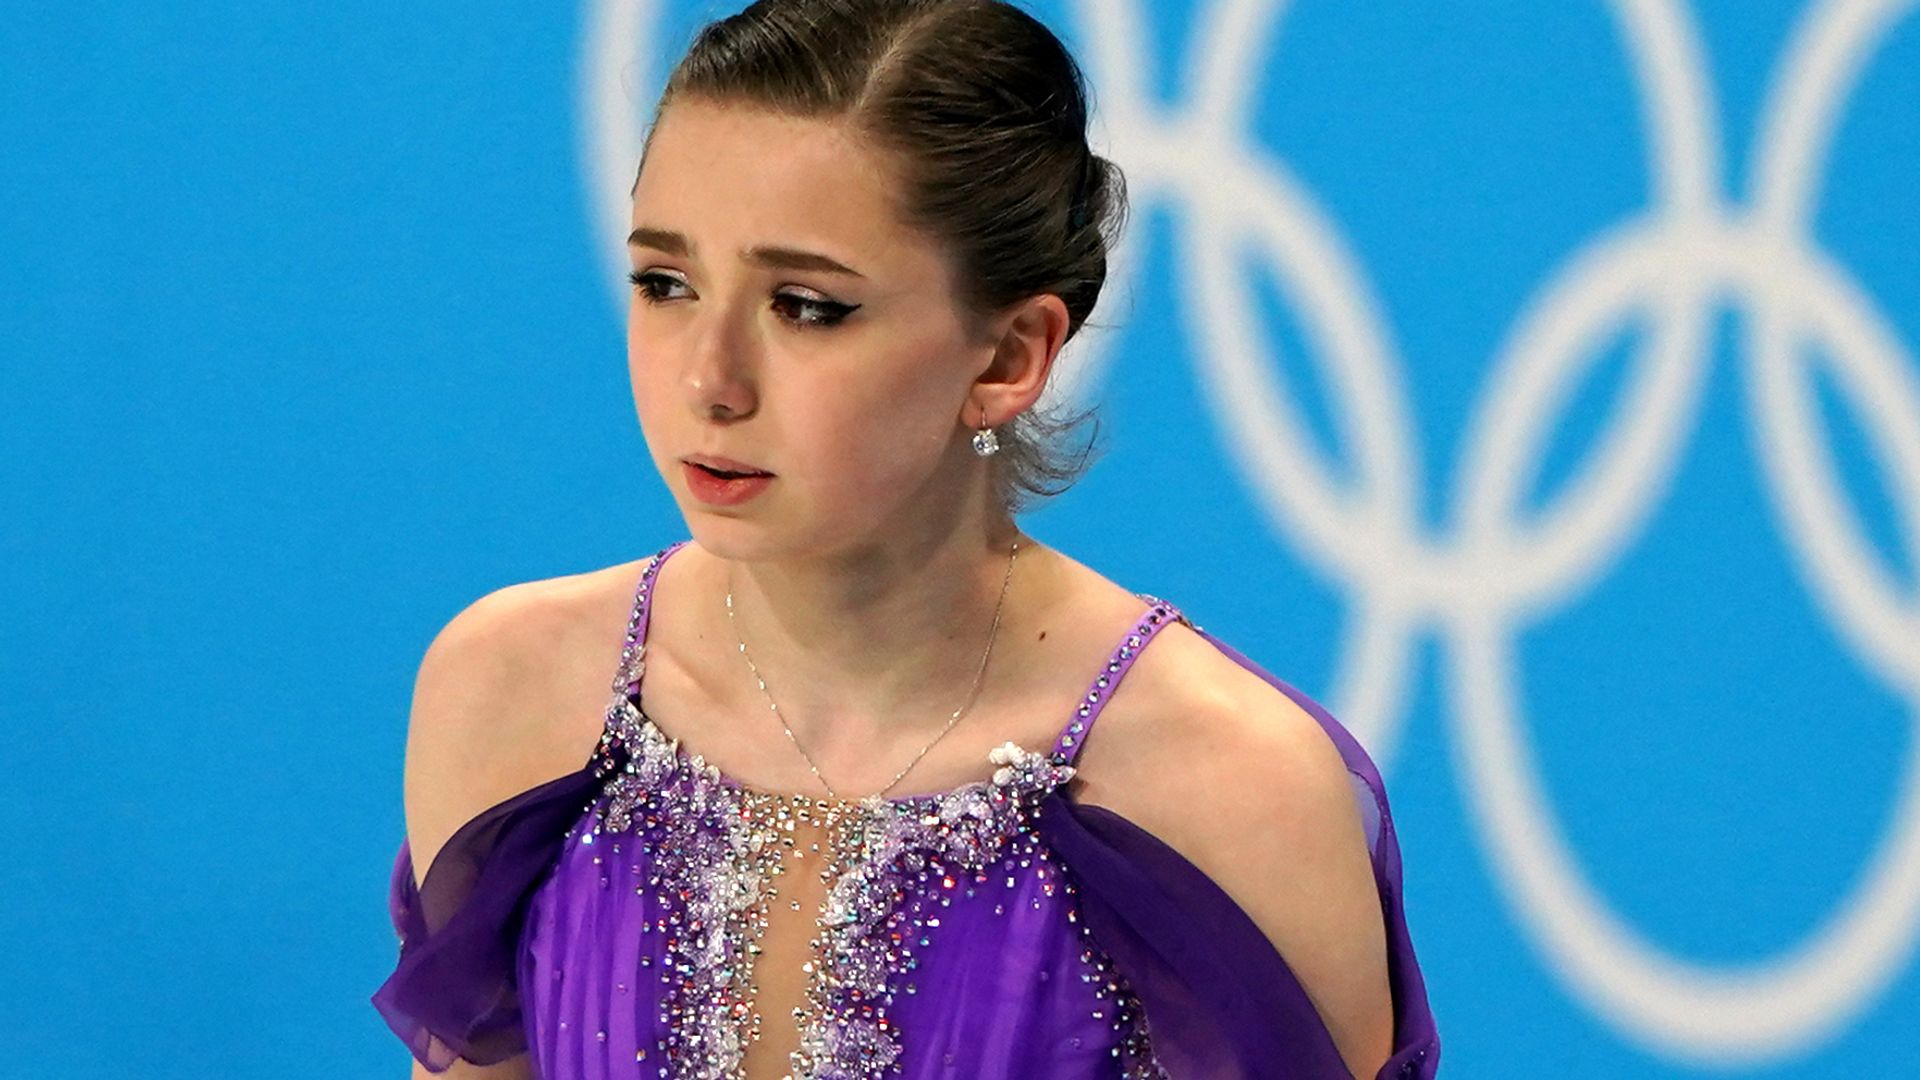 La patinadora artística rusa Valieva, sancionada por cuatro años por dopaje